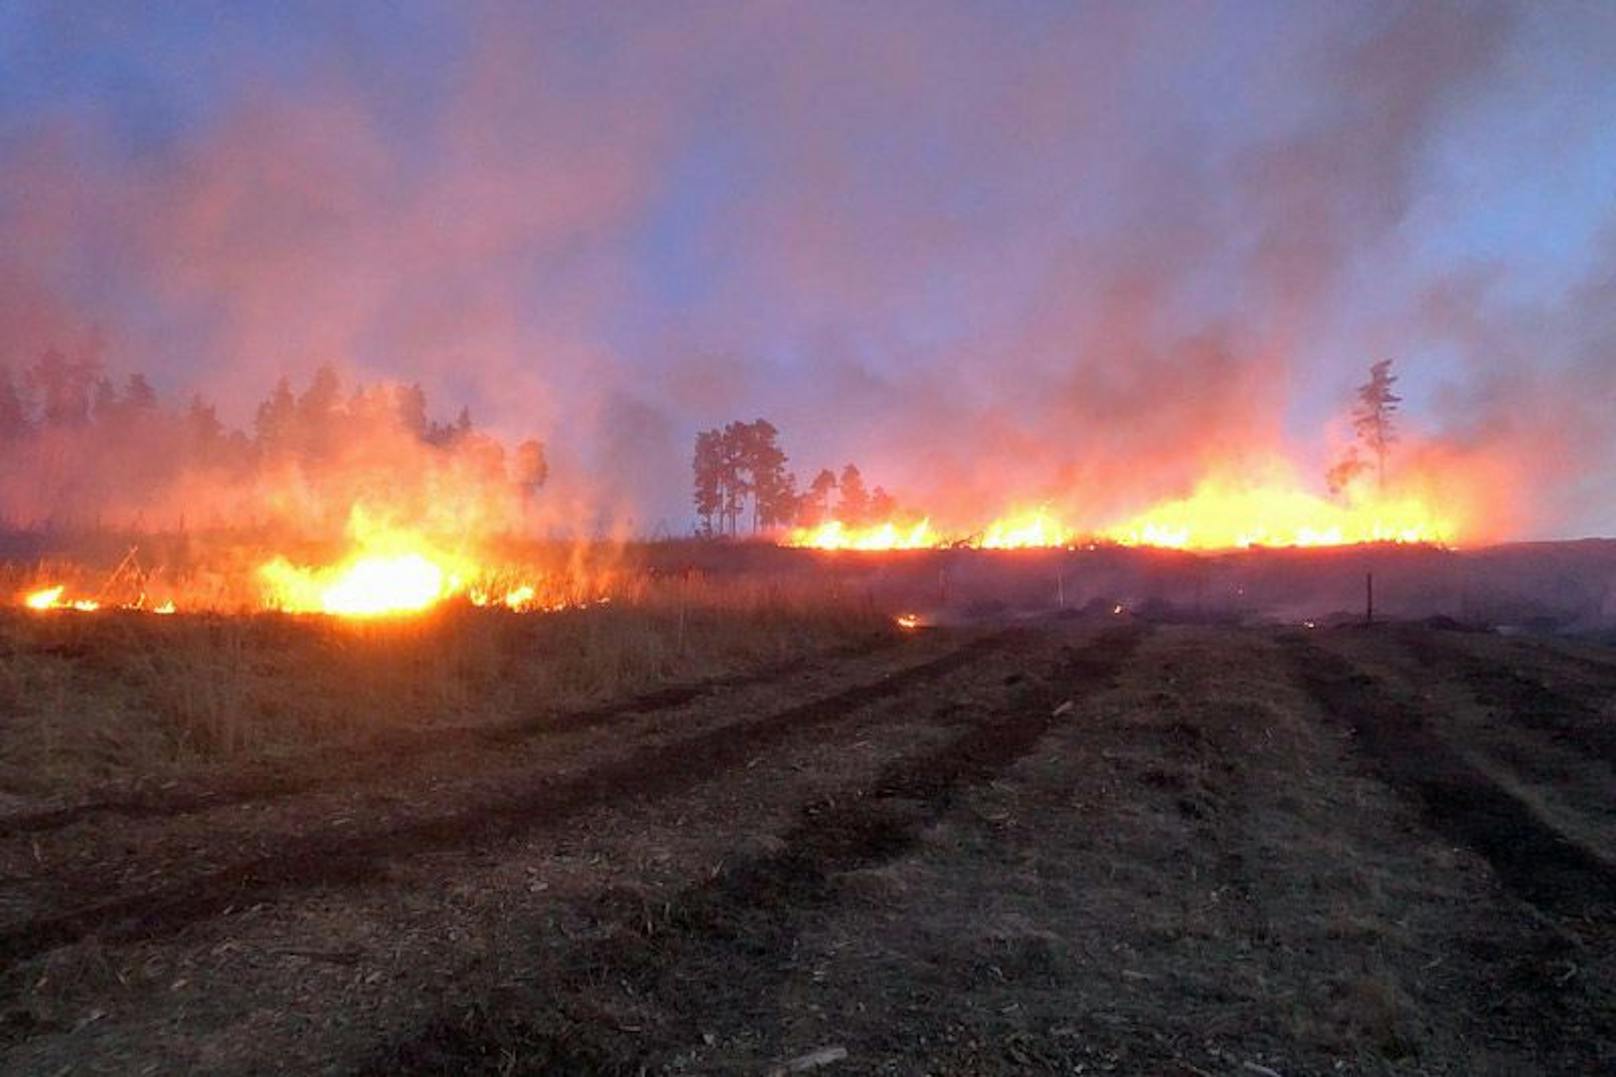 Waldbrand fordert 15 Wehren, 20 Hektar in Vollbrand